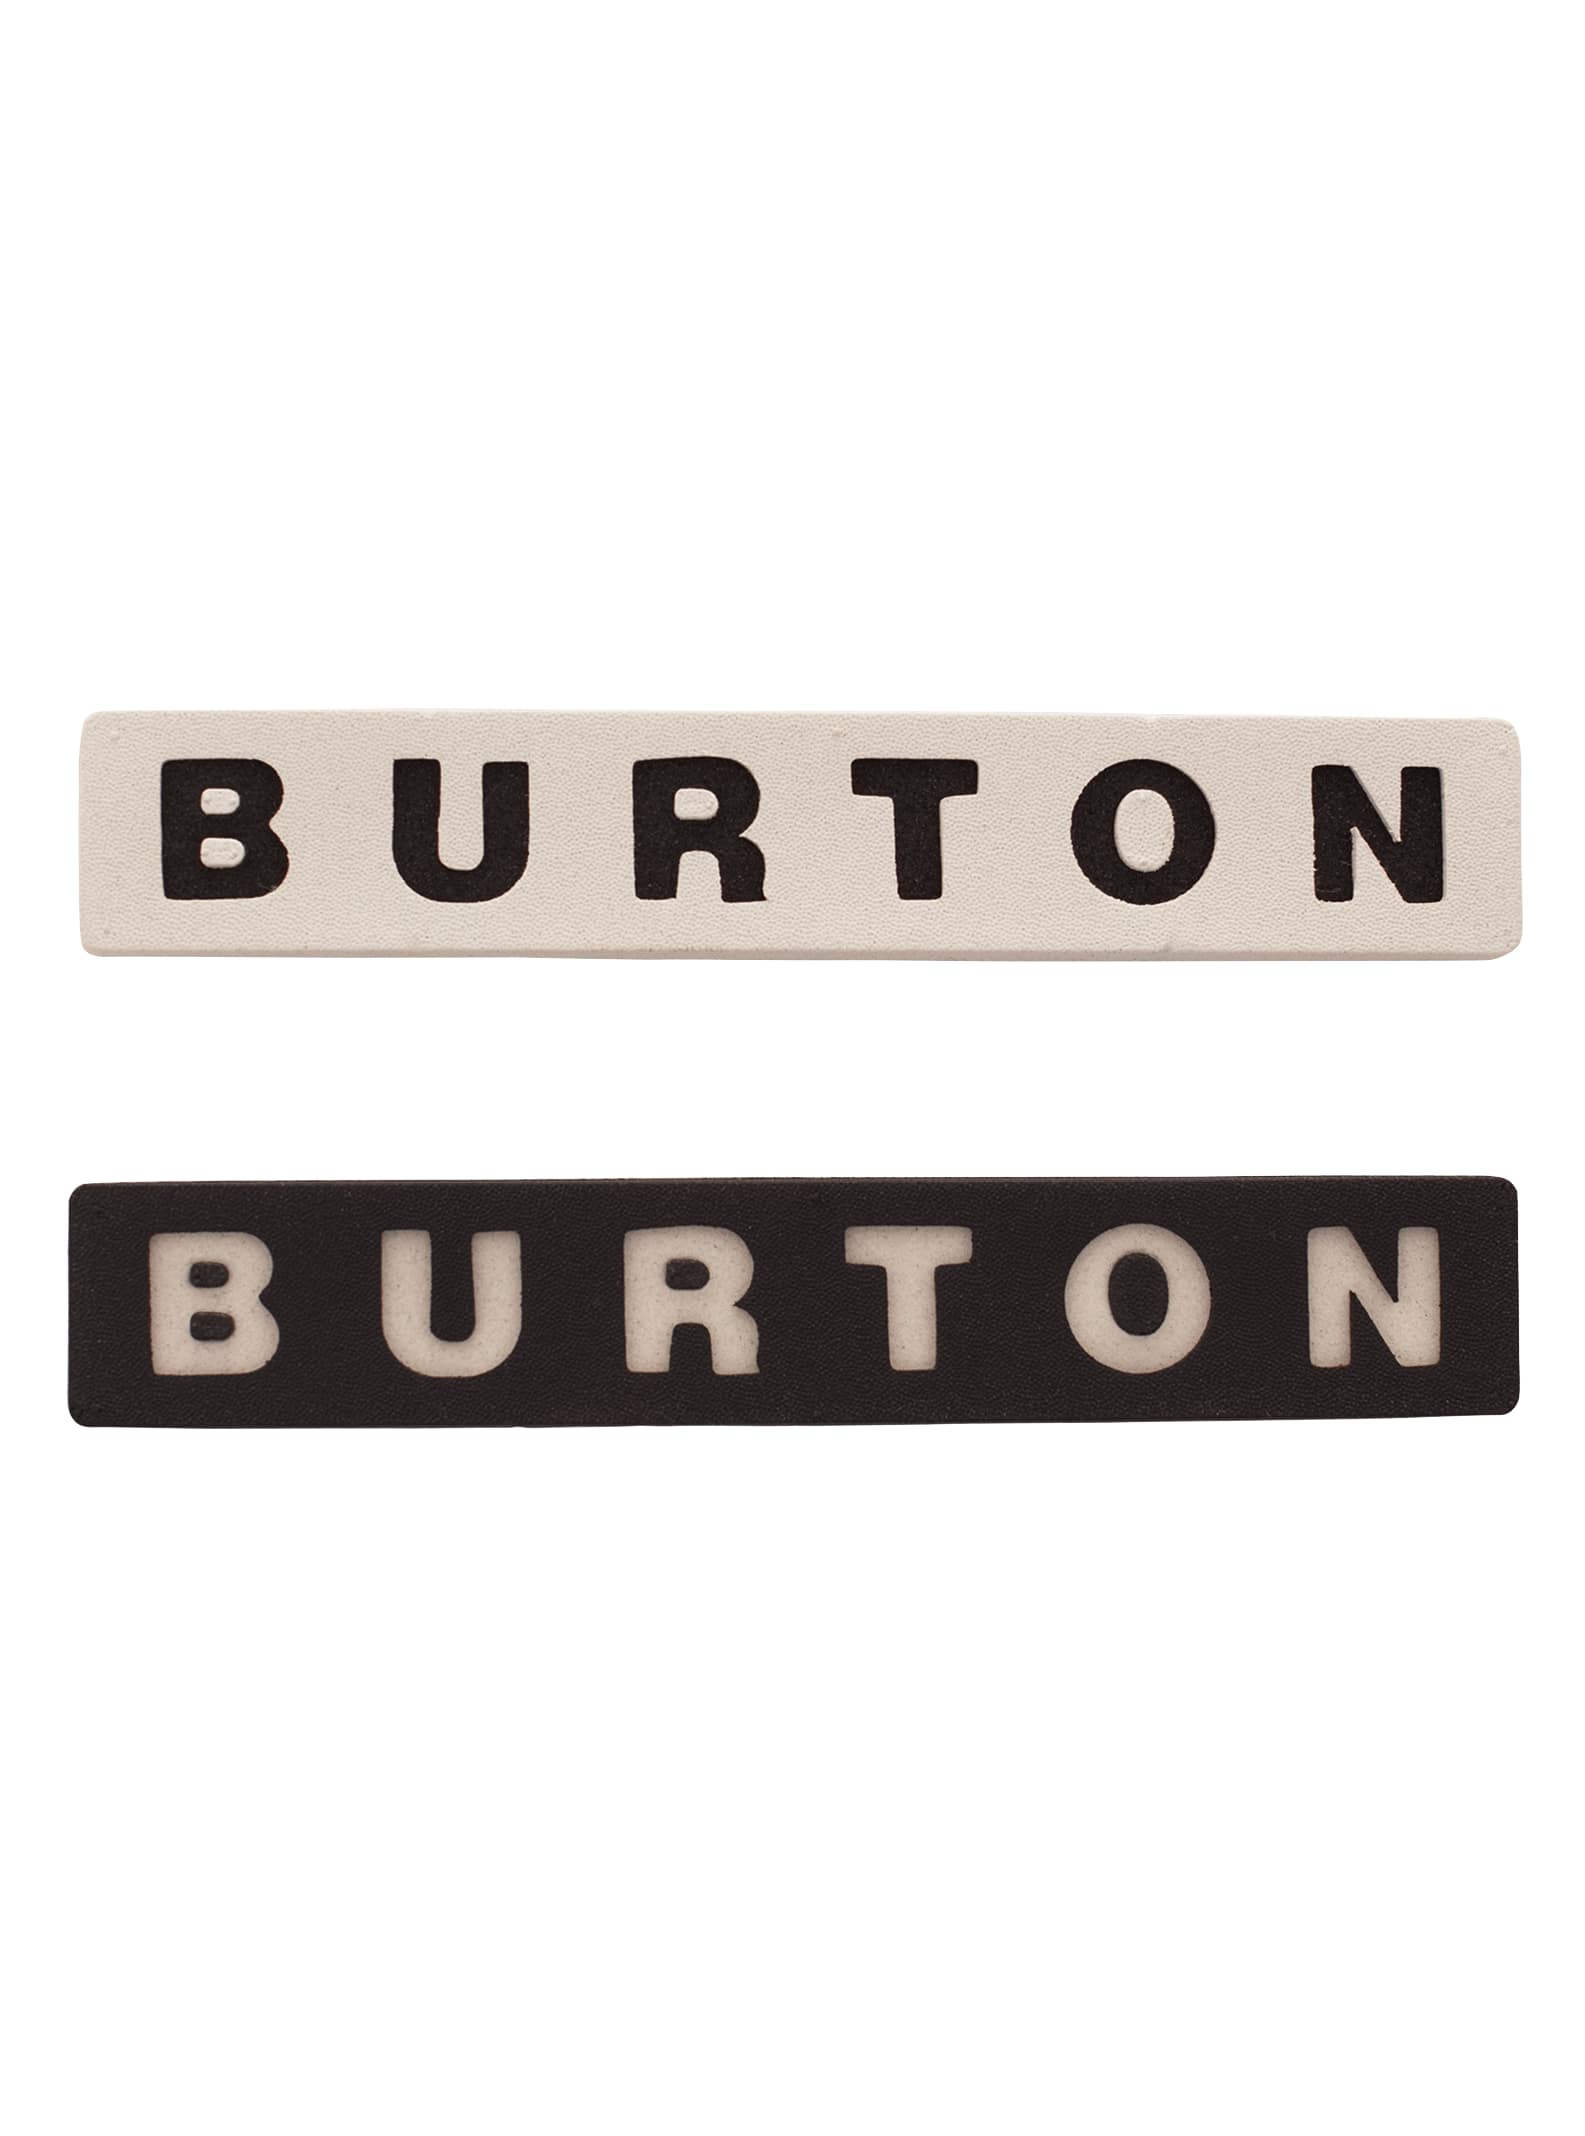 Burton Foam Snowboard Stomp Pad, Parts & Accessories